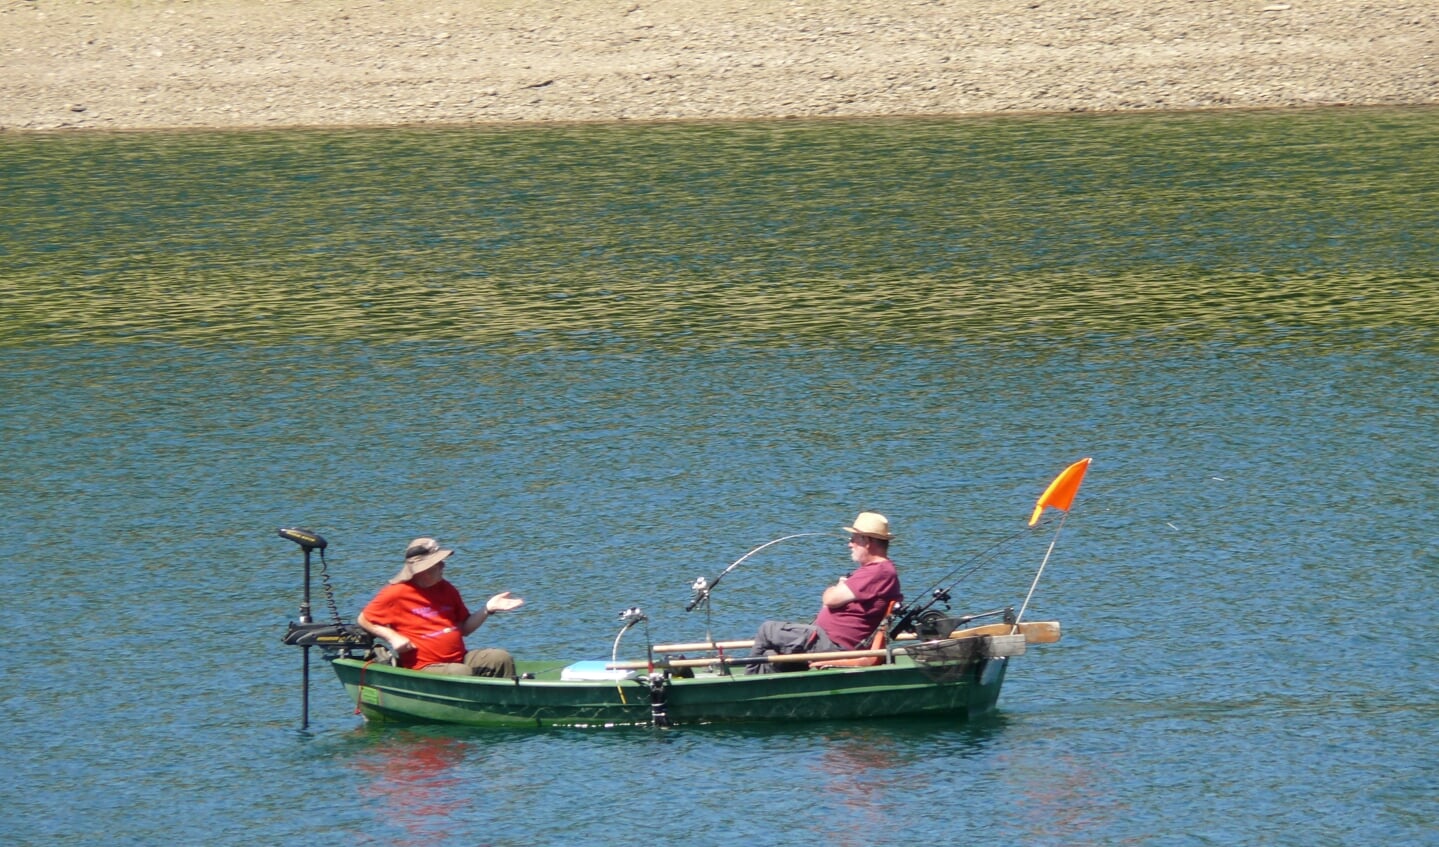 Deze foto toont een ontspannen moment tijdens het vissen op de Diemelsee.